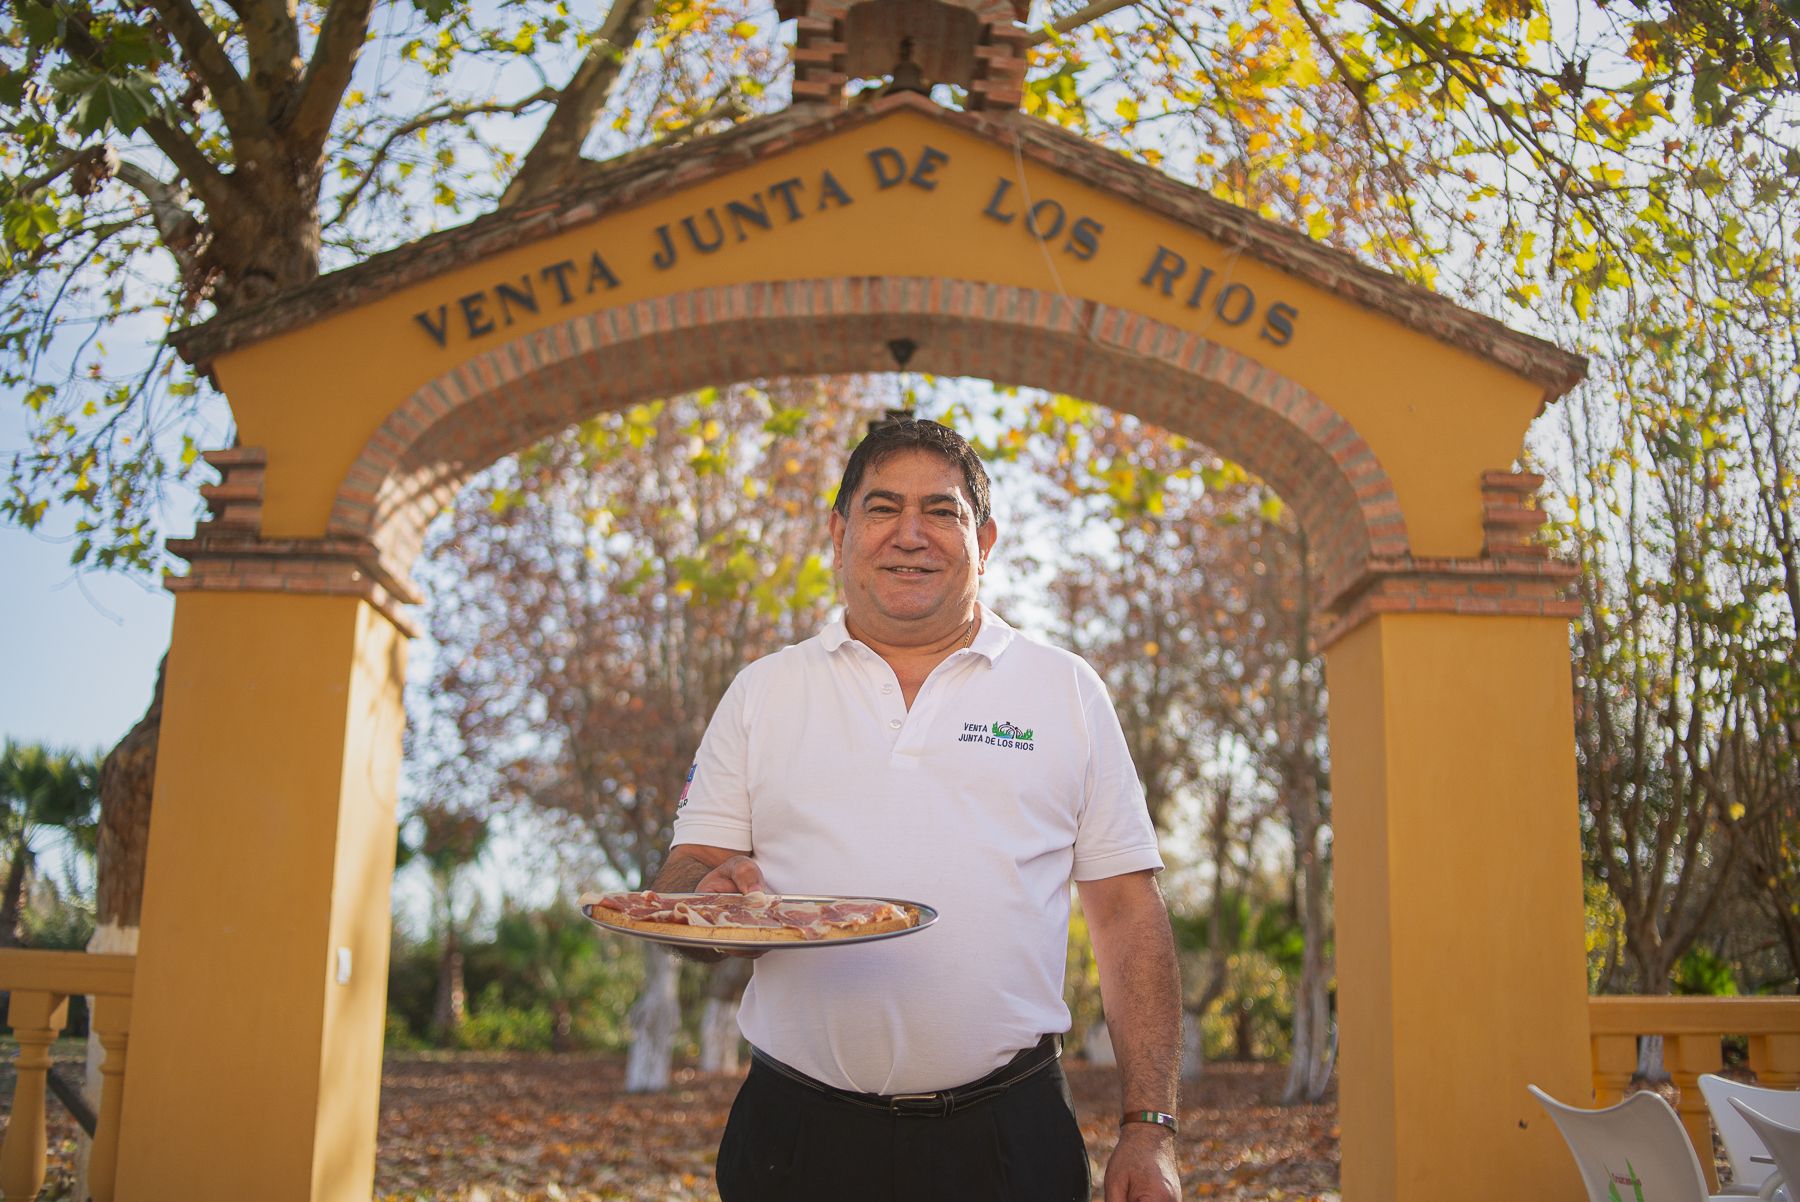 Juan de Jesús Ramírez Alpresa, propietario de la venta Junta de los Ríos, un negocio centenario con tostadas como zapatillas .